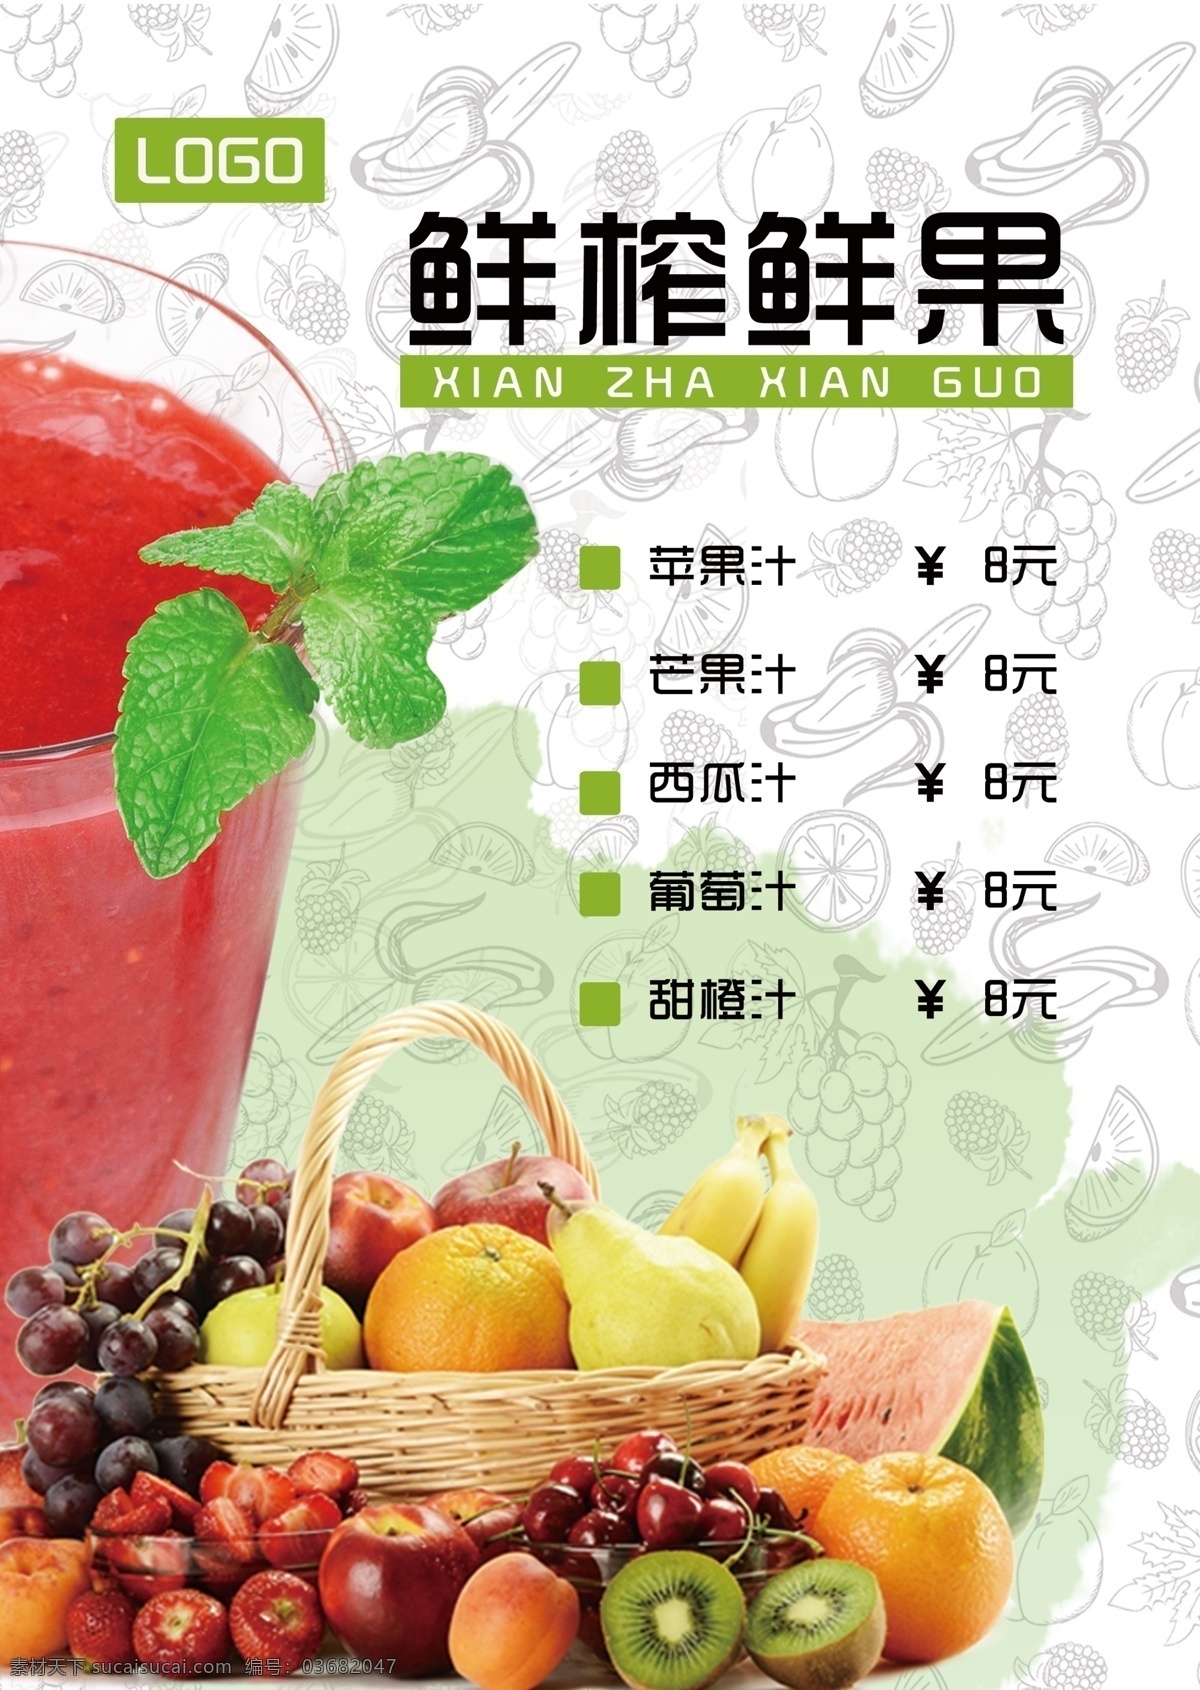 鲜榨 鲜果 果汁 菜单 鲜榨鲜果 报价单 a4单页 水果 冷饮